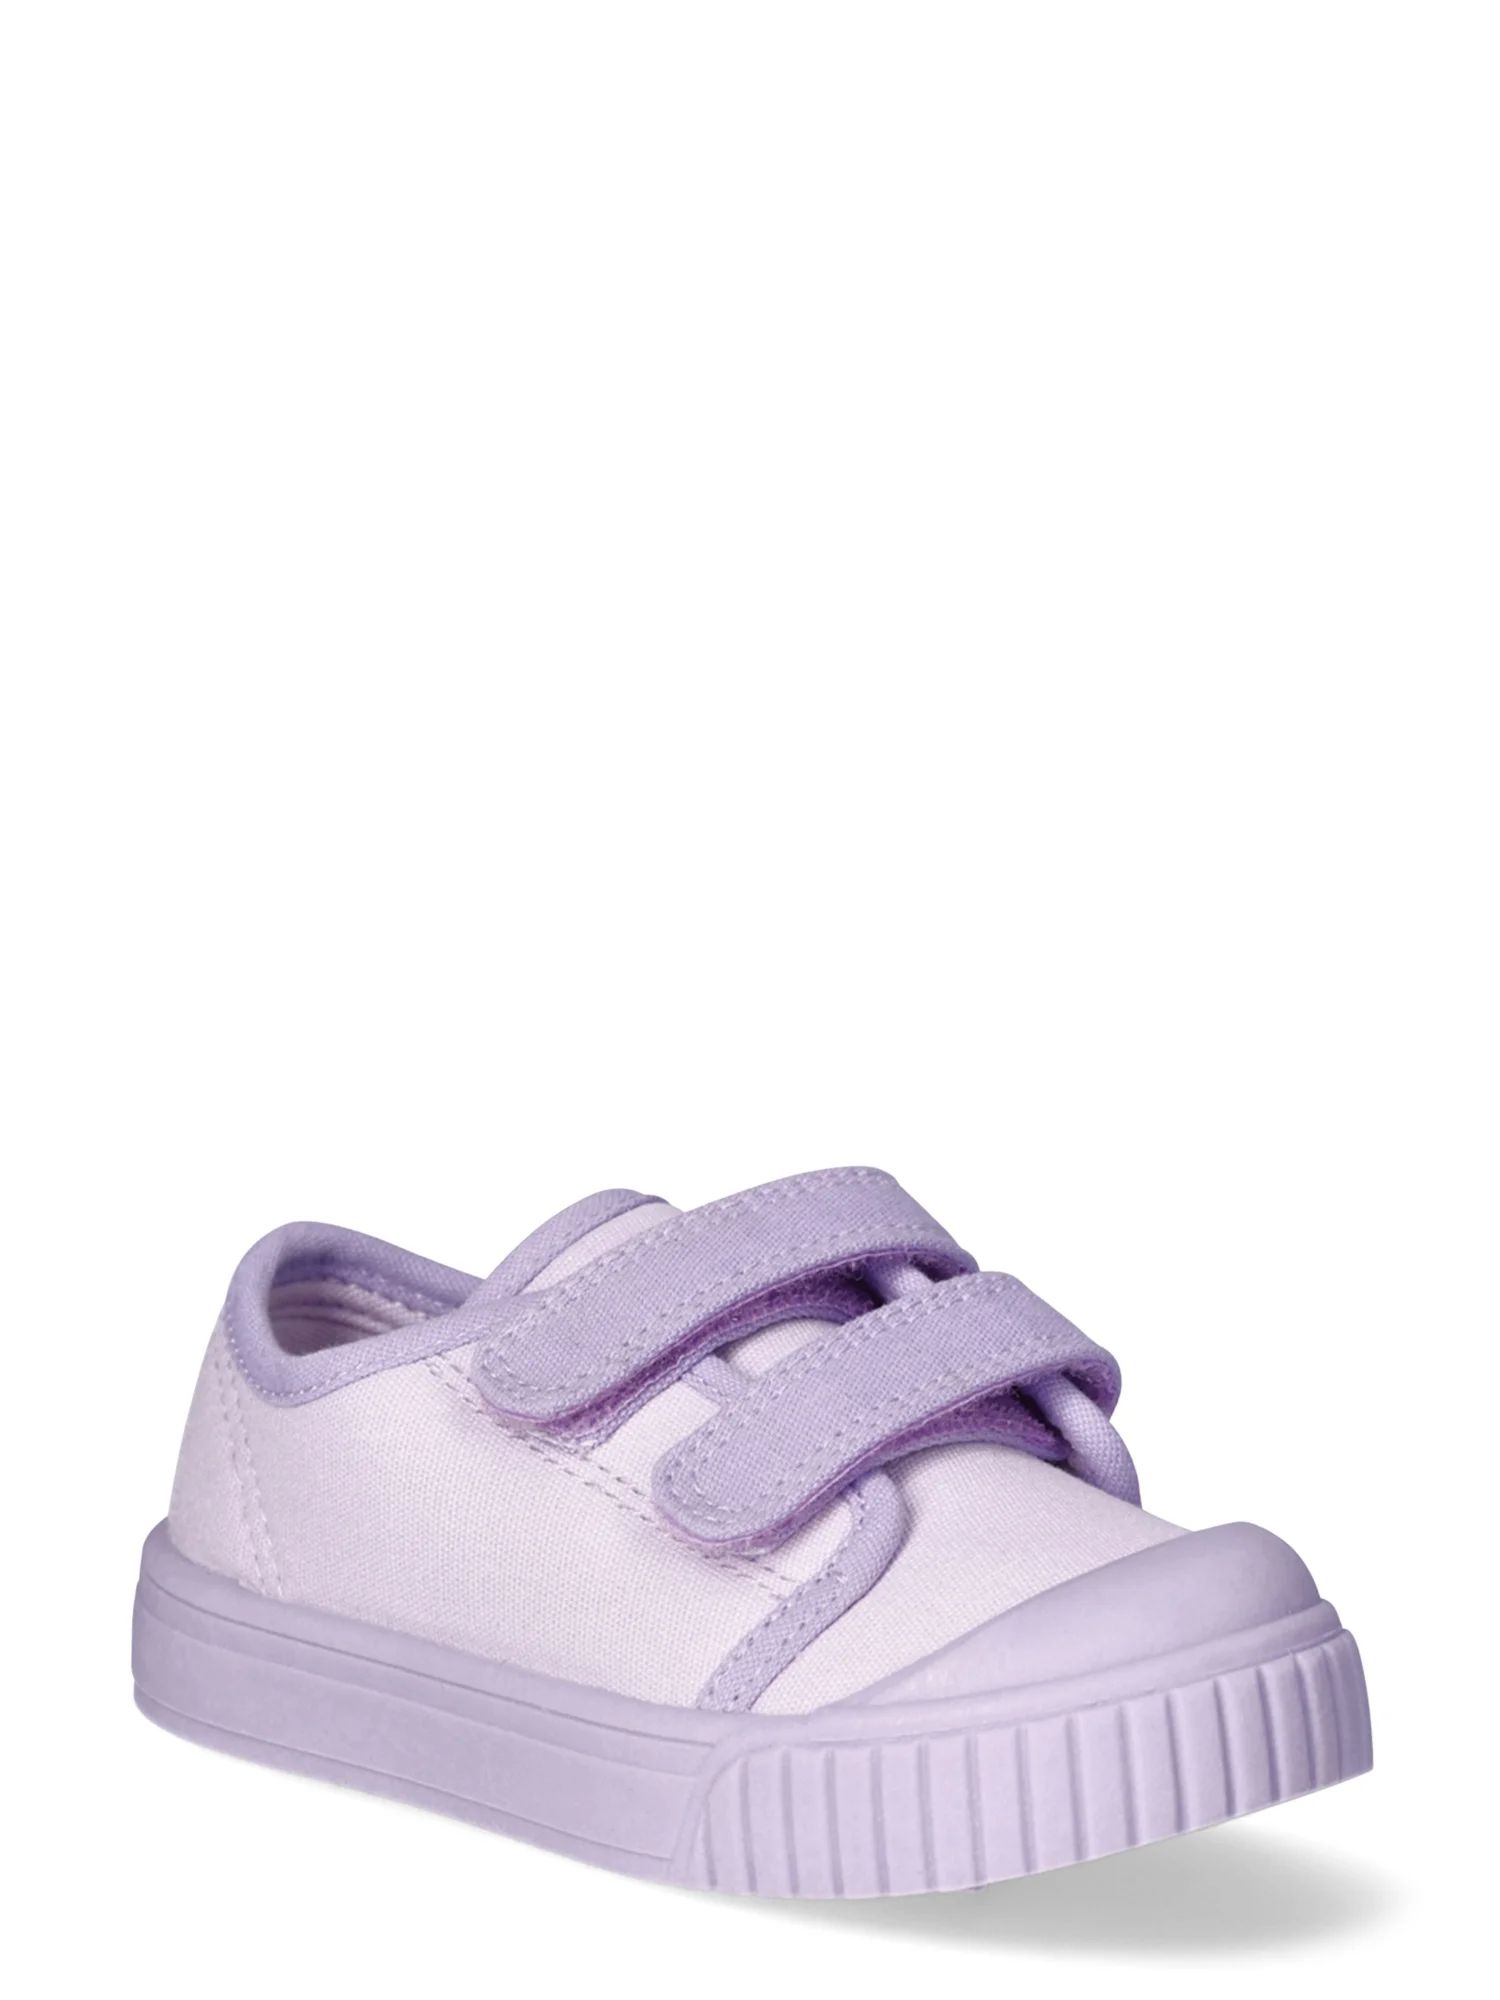 Wonder Nation Toddler Girls Two-Strap Bump Toe Sneakers, Sizes 7-12 | Walmart (US)